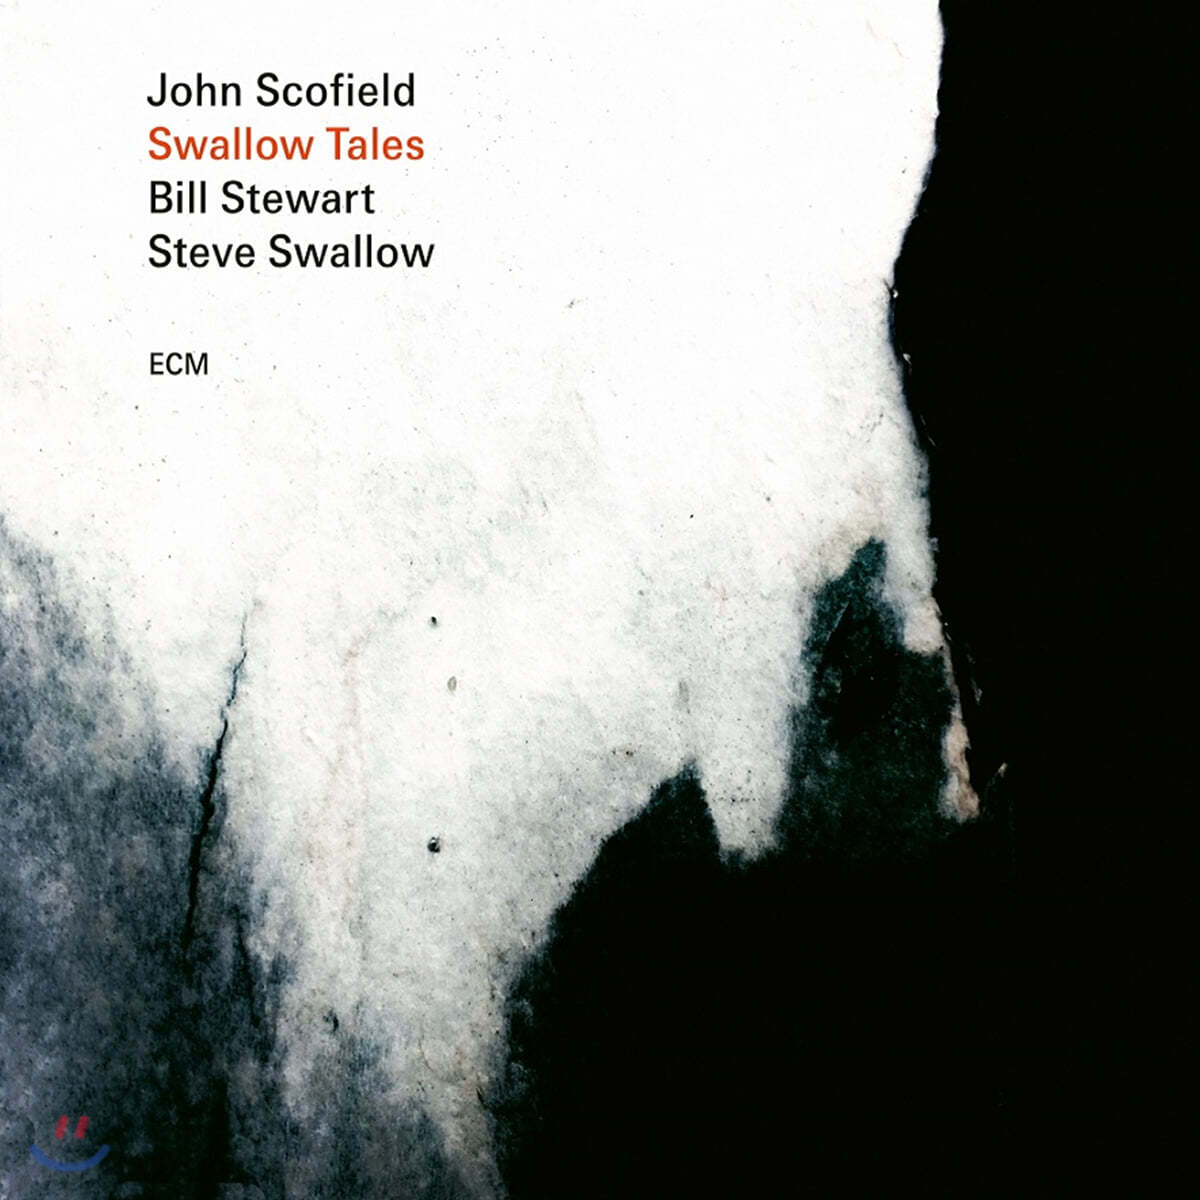 John Scofield / Bill Stewart / Steve Swallow (존 스코필드) - Swallow Tales